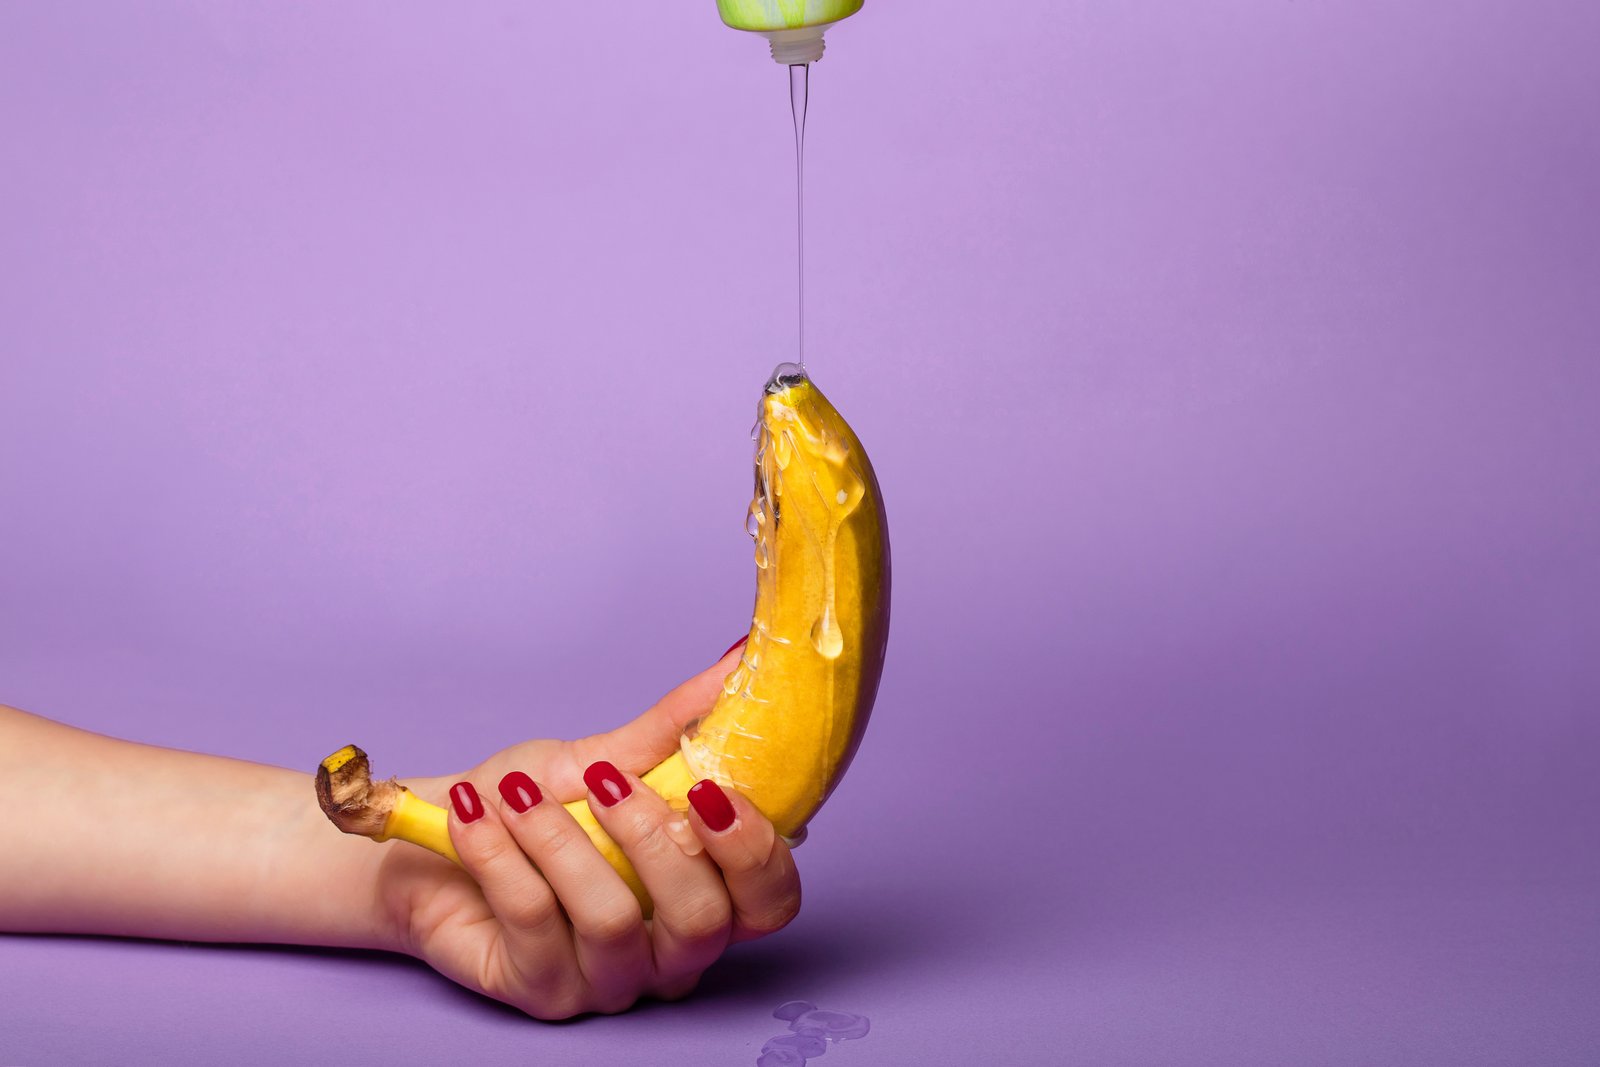 Mazivo se přelije přes banán držený jednou rukou.